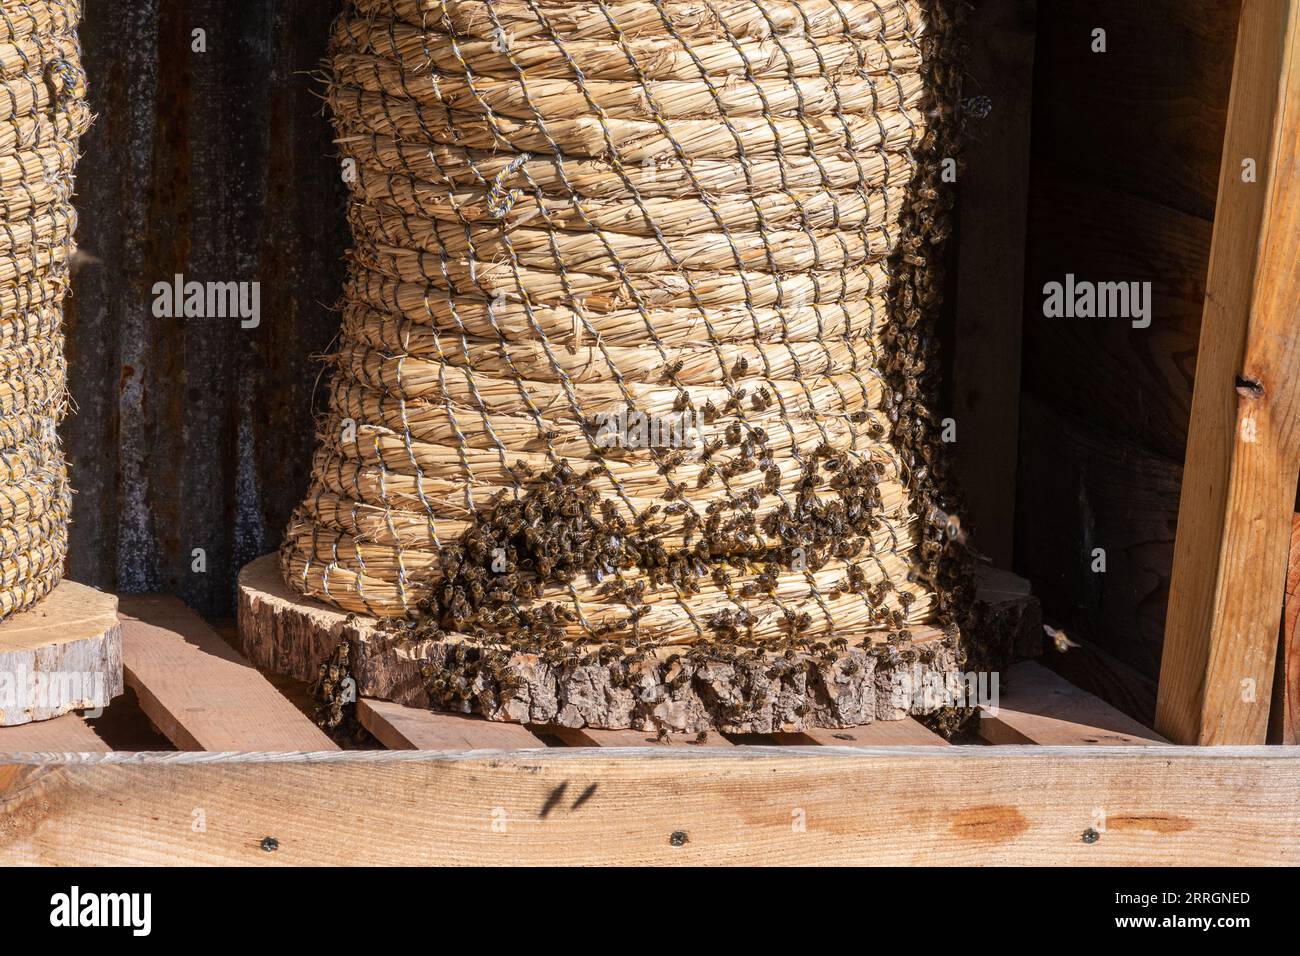 Weidenkorb Bienenstock genannt Skep mit Honigbienen (APIs mellifera) auf der Außenseite, Bienenhaltung, Imkerei Stockfoto